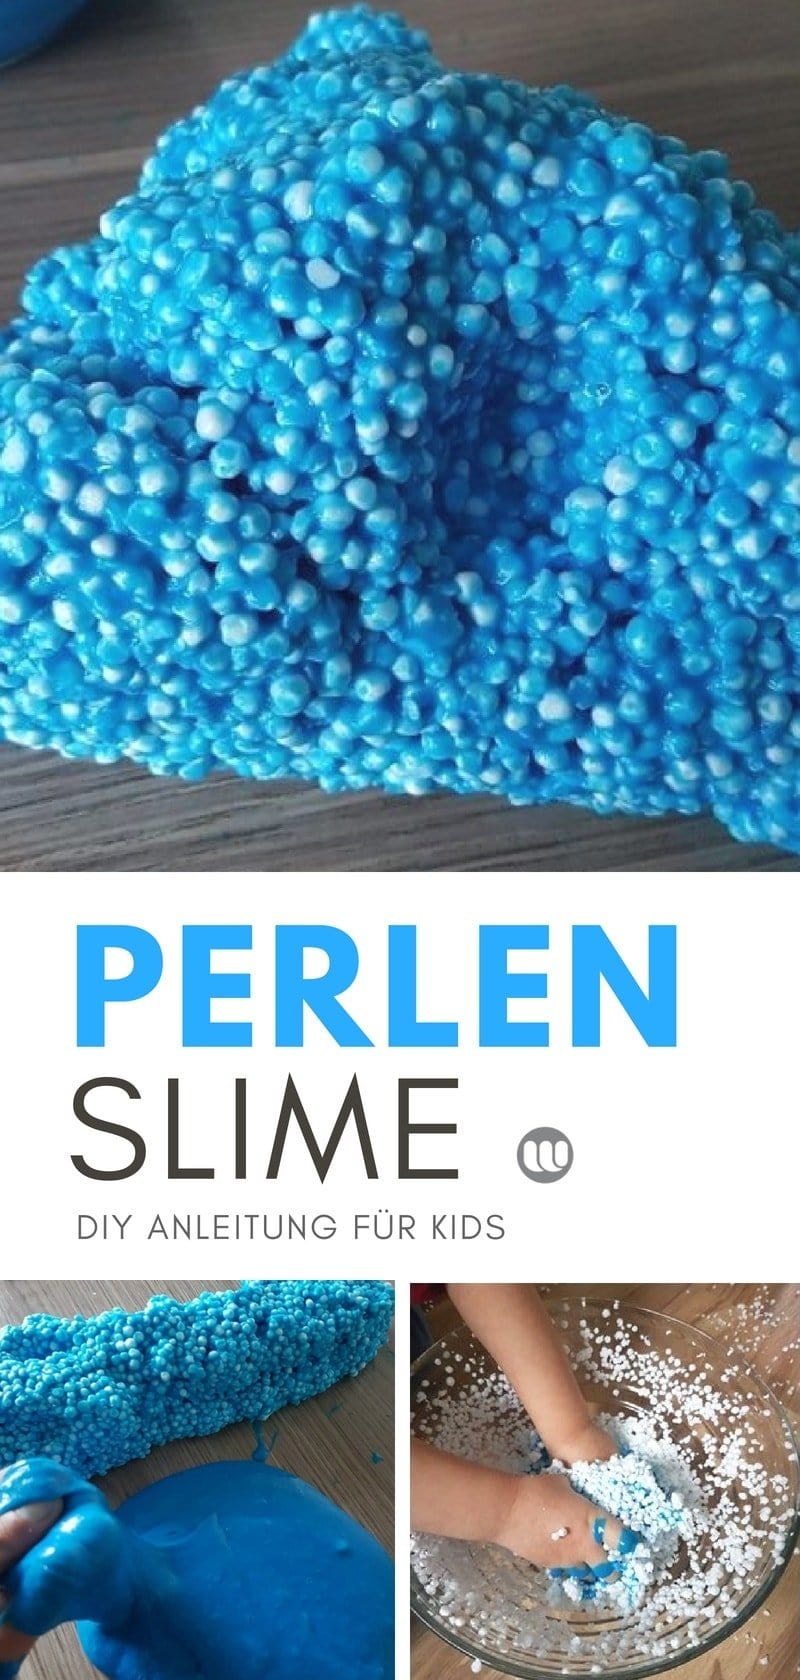 DIY Wolkenschleim: Perlen Slime Anleitung